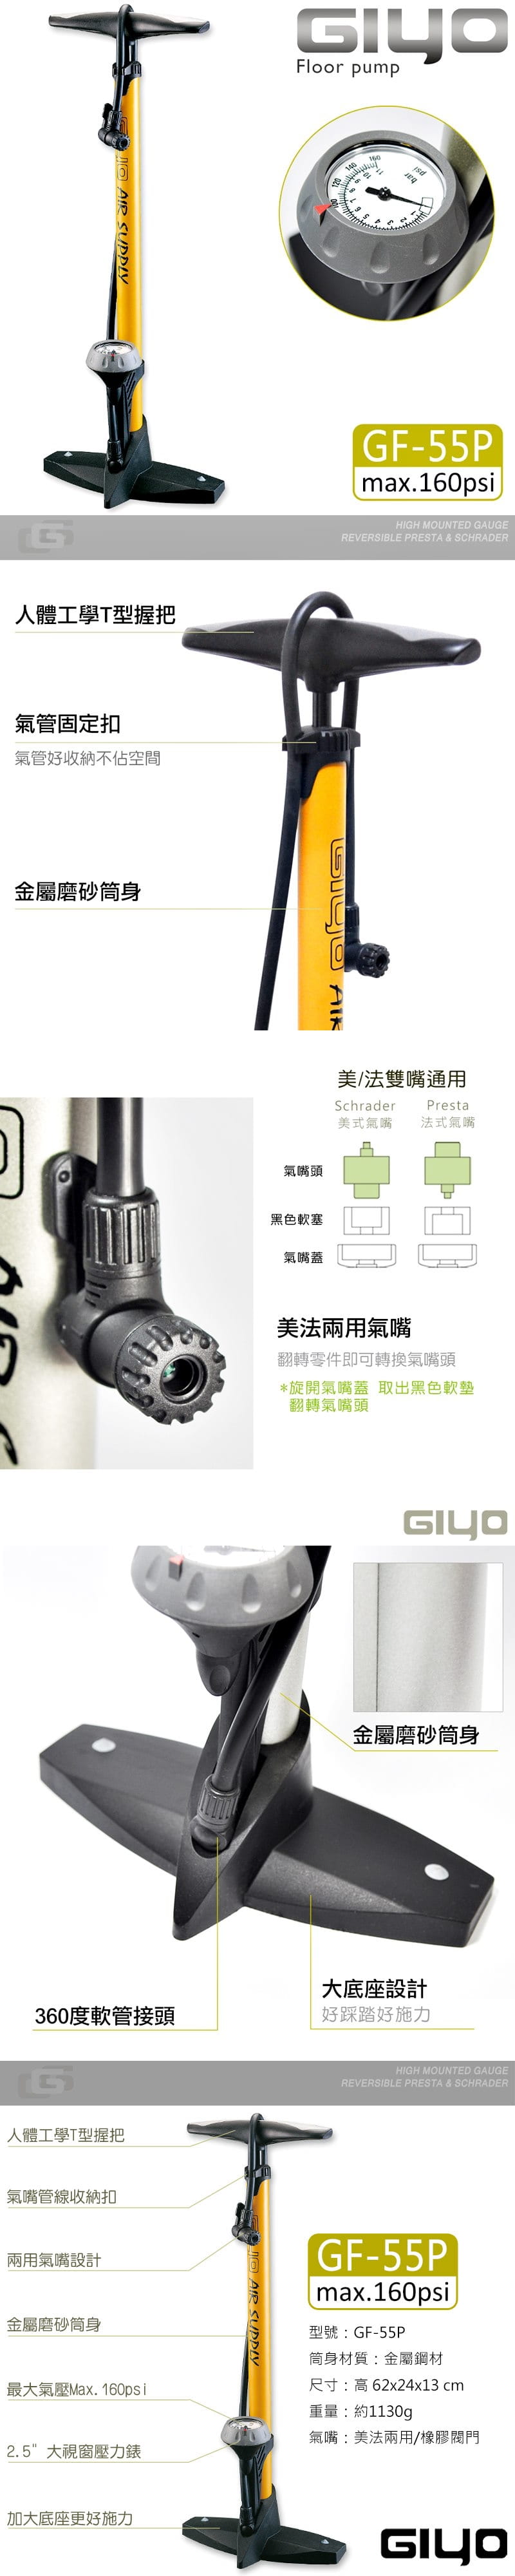 台灣製 直立式超大氣壓錶打氣筒 GF-55P 1